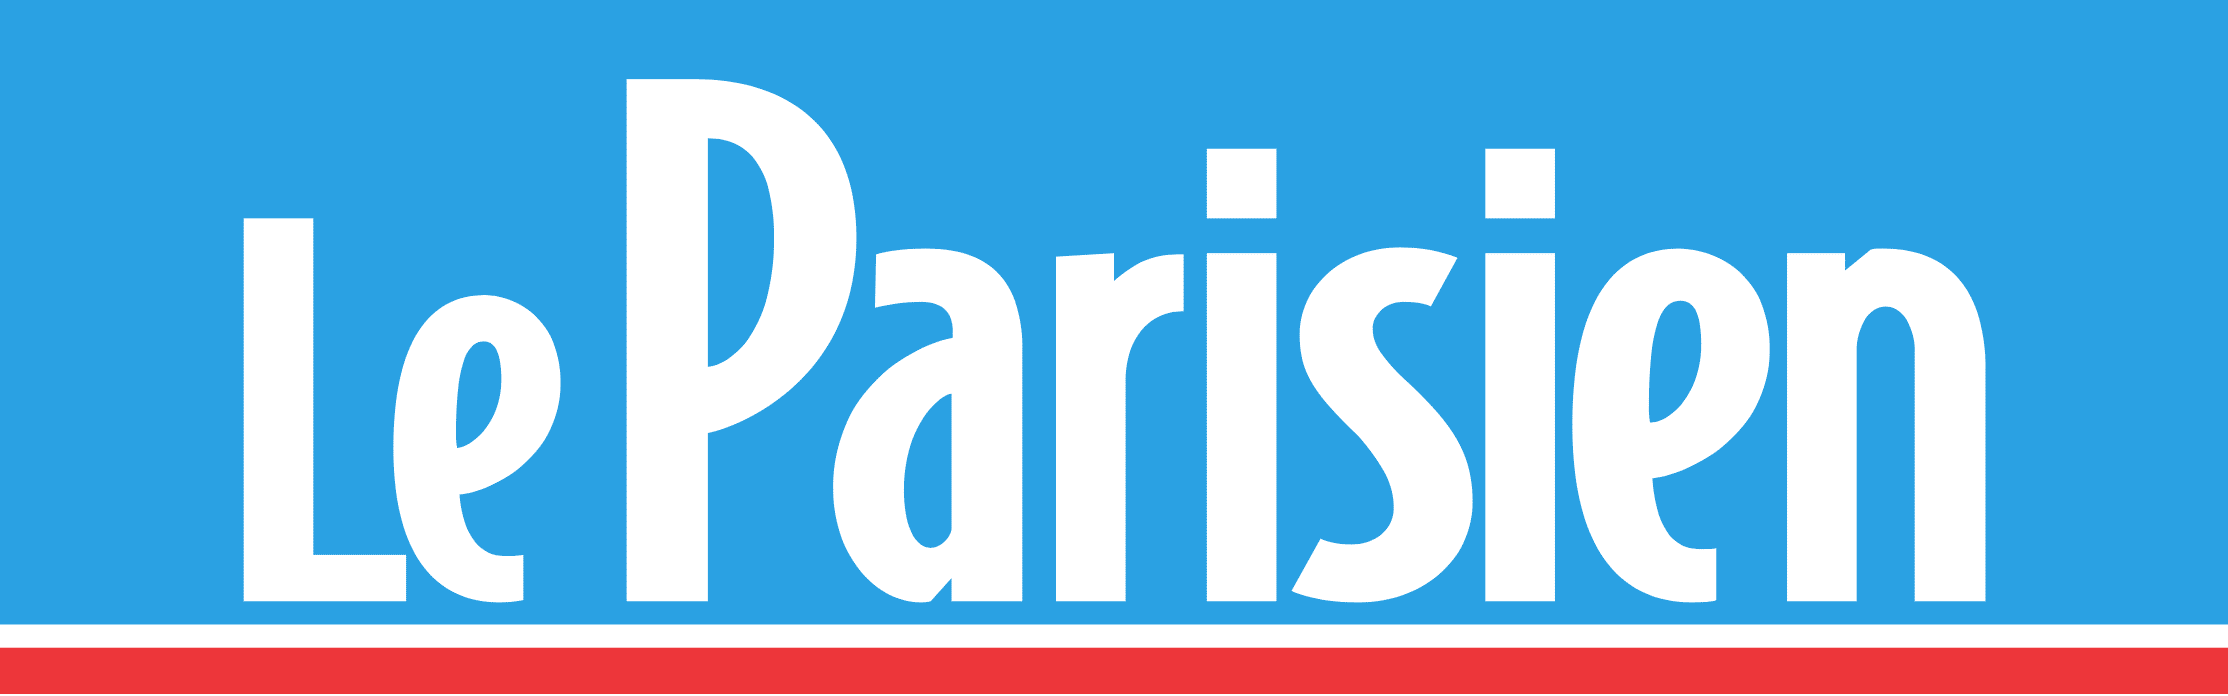 Le_Parisien Accueil